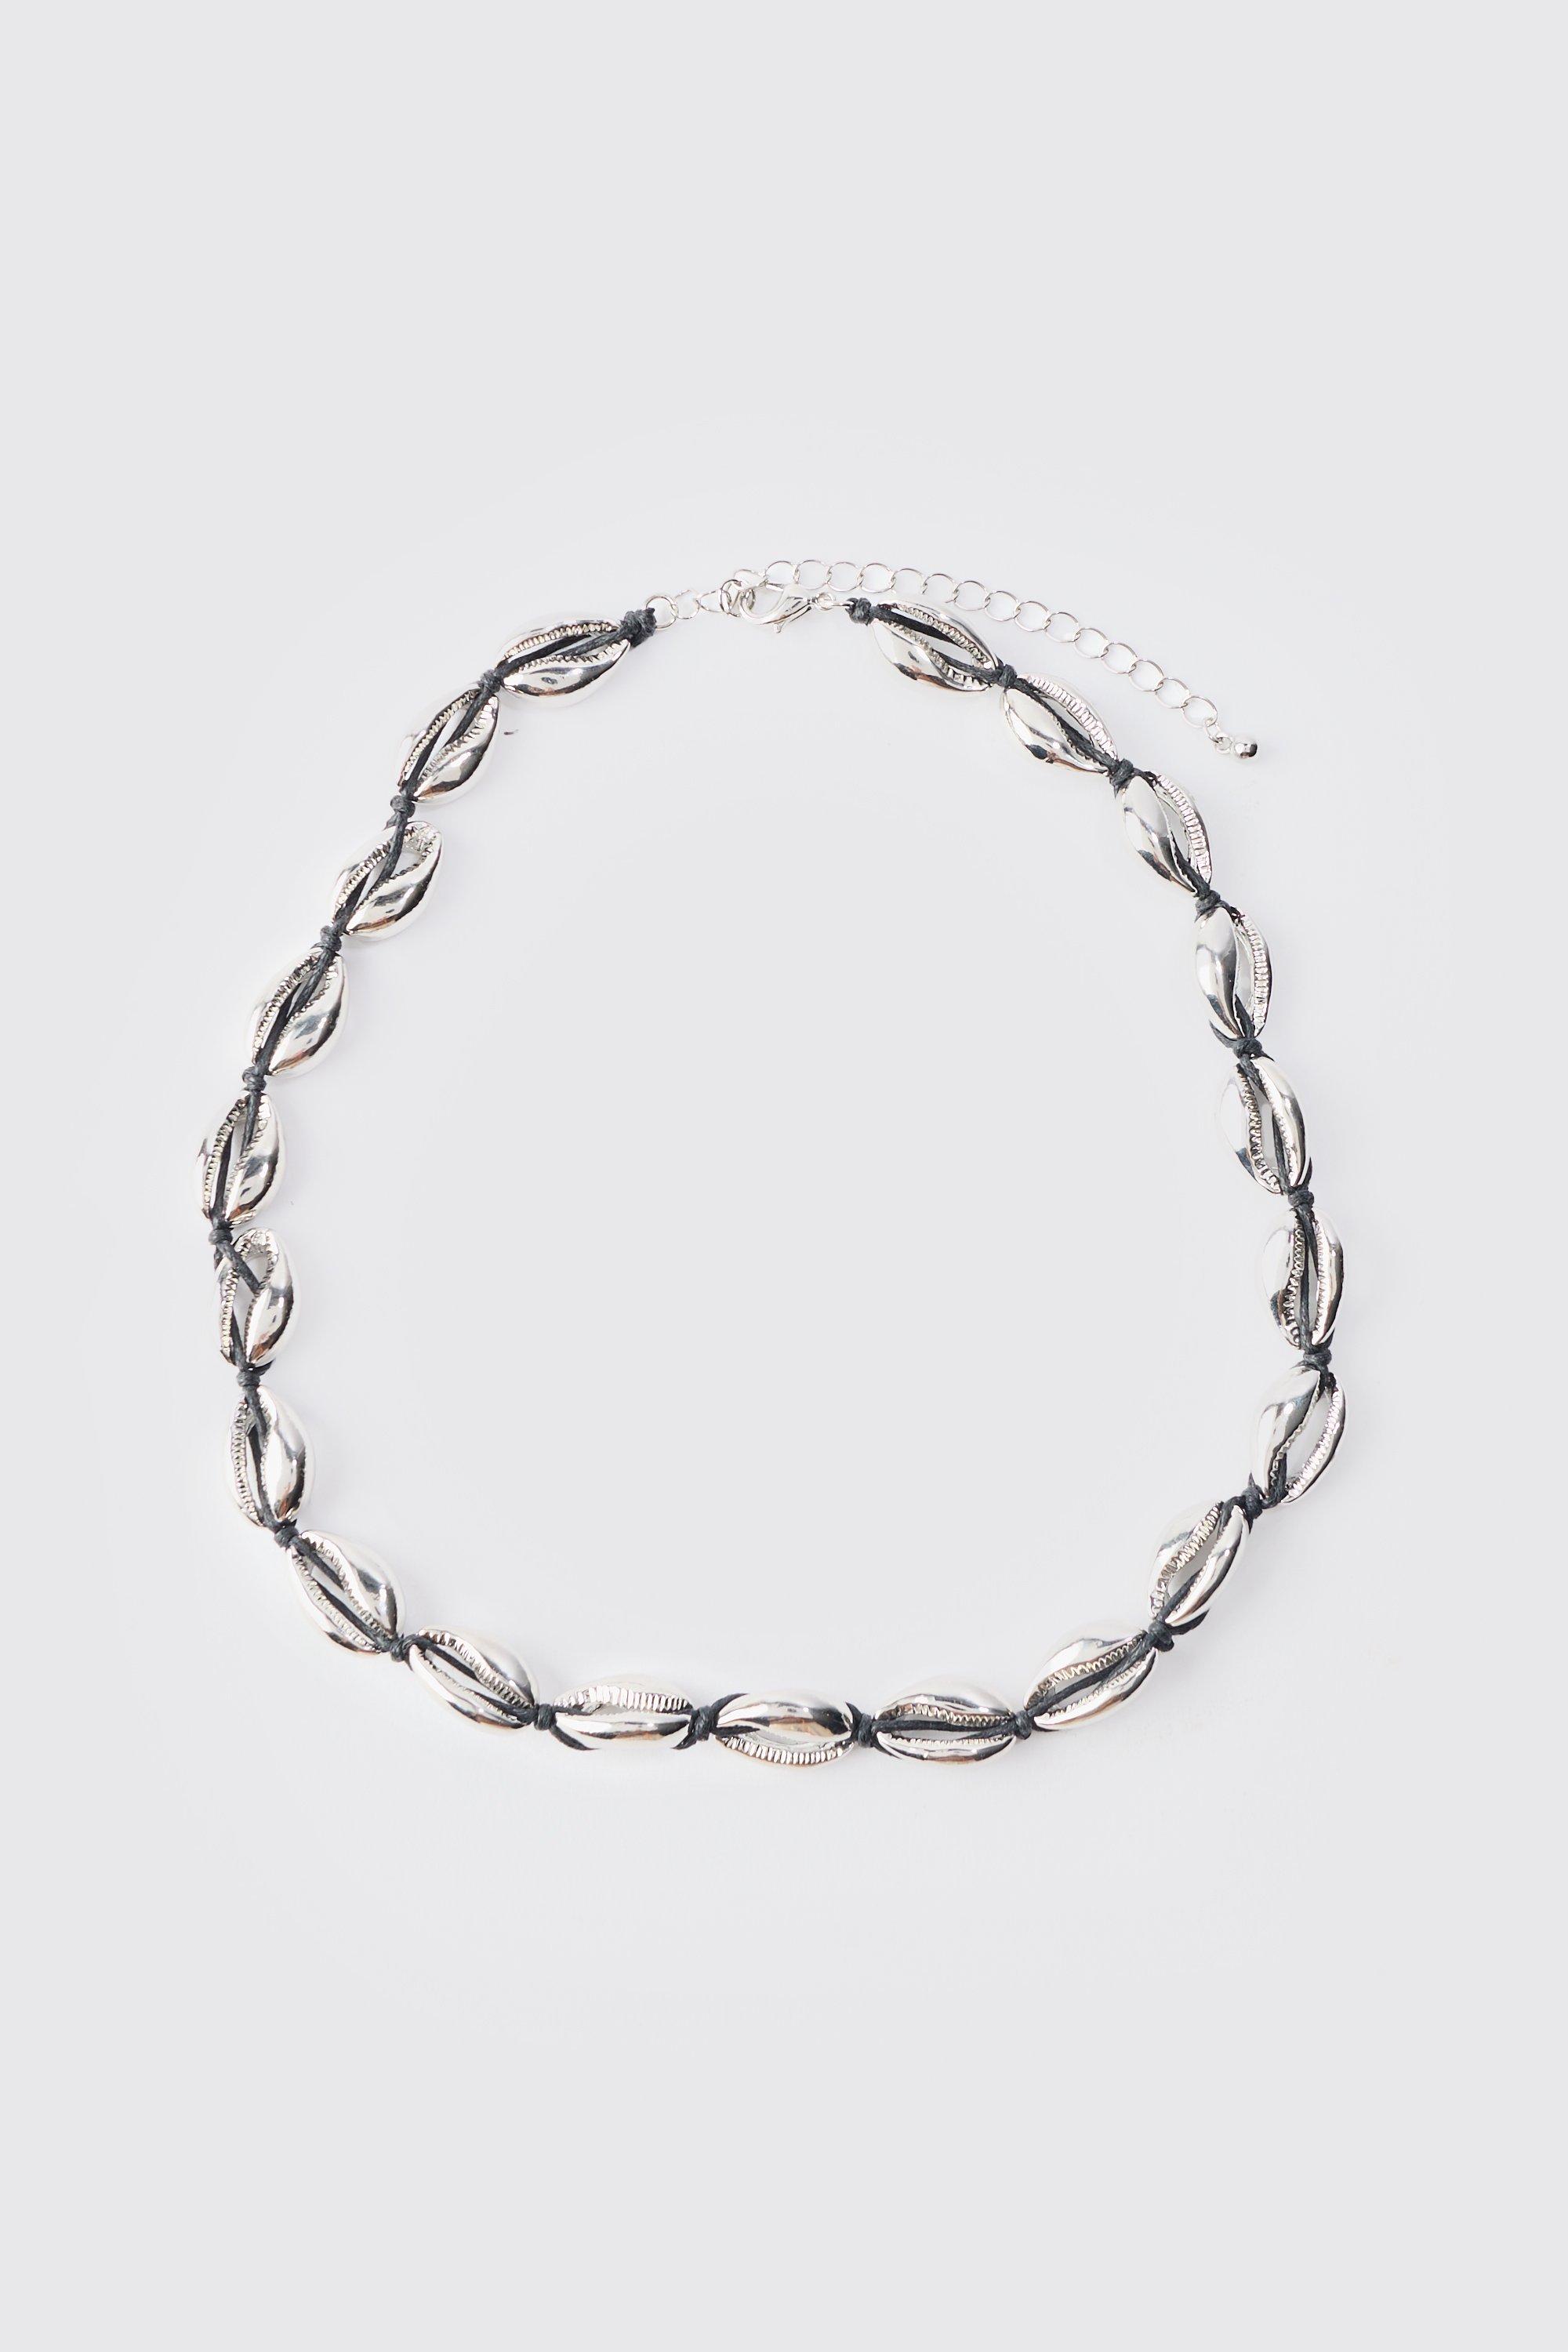 collier en corde à pendentif coquillages homme - argent - one size, argent